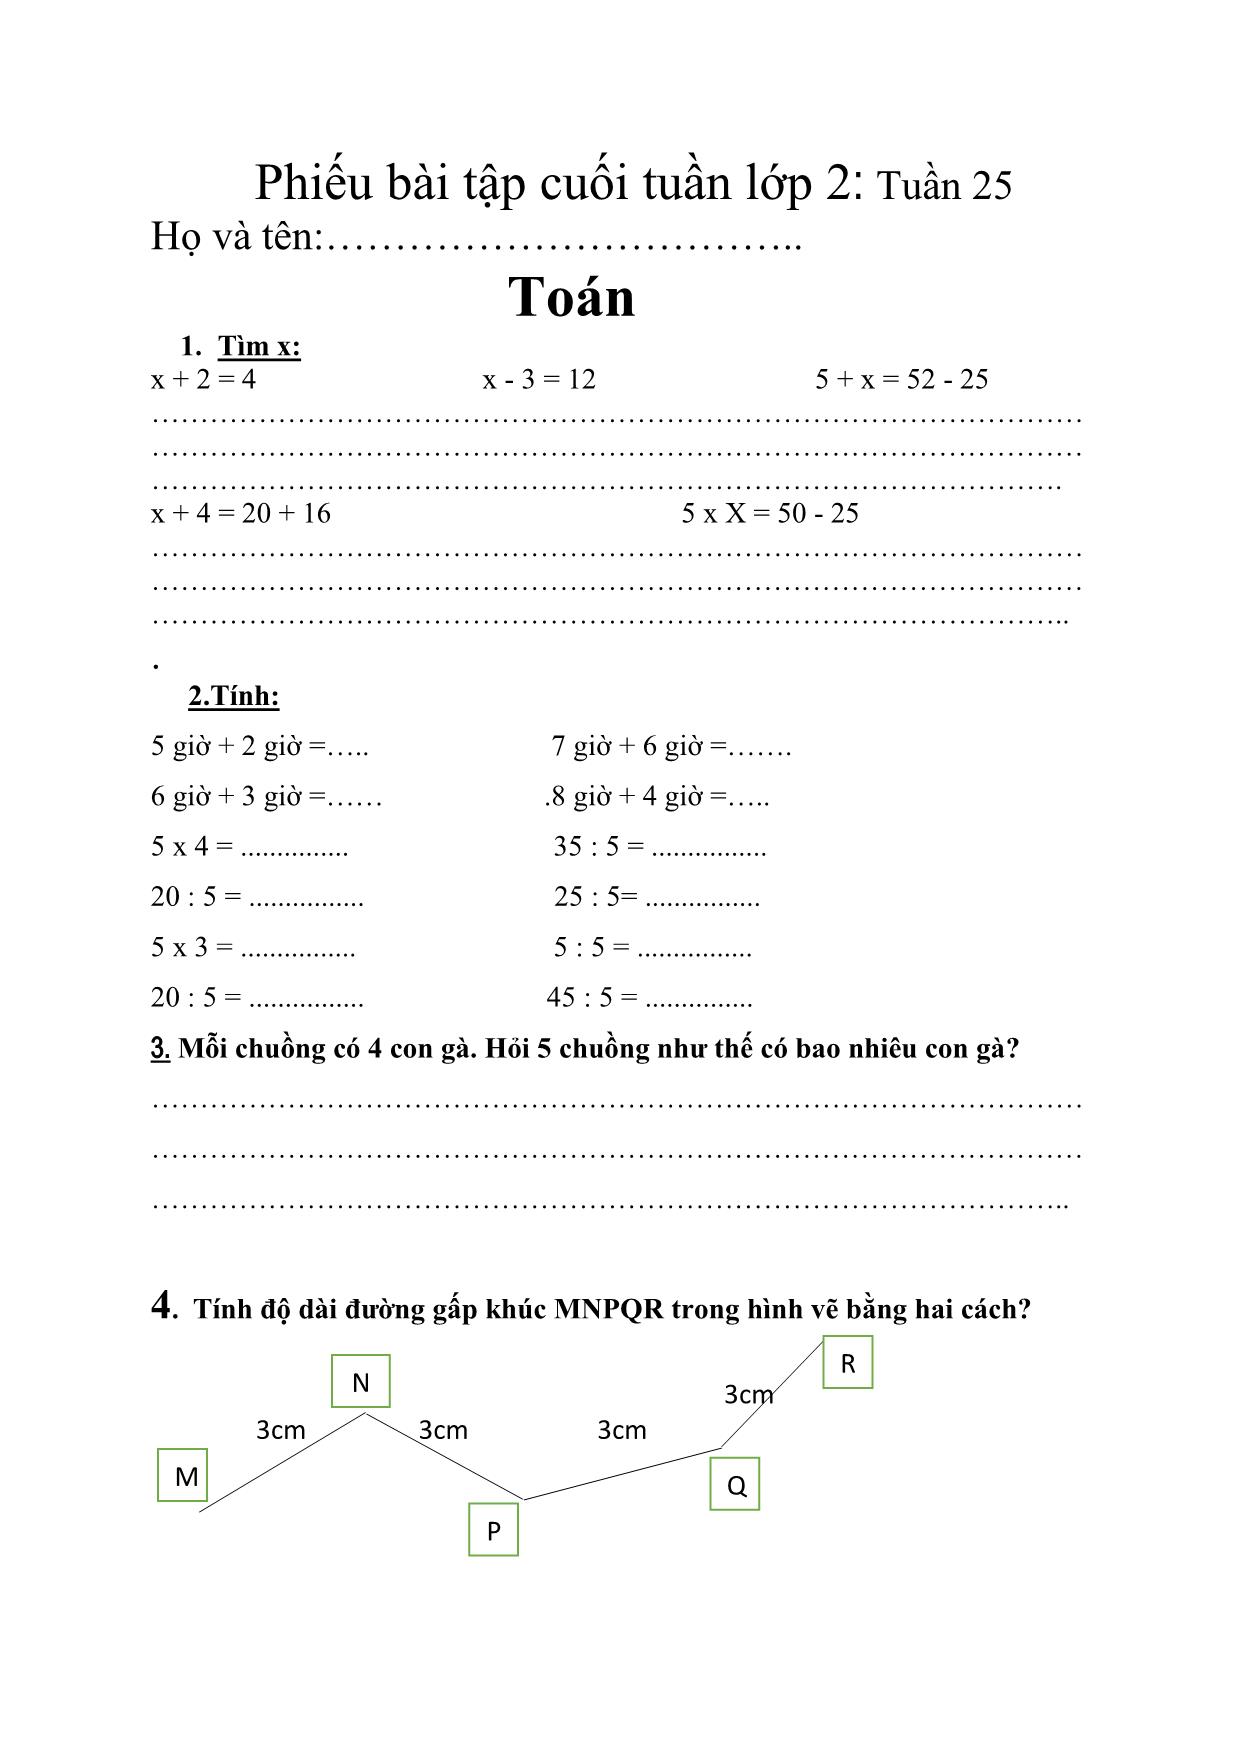 Phiếu bài tập cuối tuần lớp 2 - Tuần 25 - Môn: Toán + Tiếng Việt trang 1